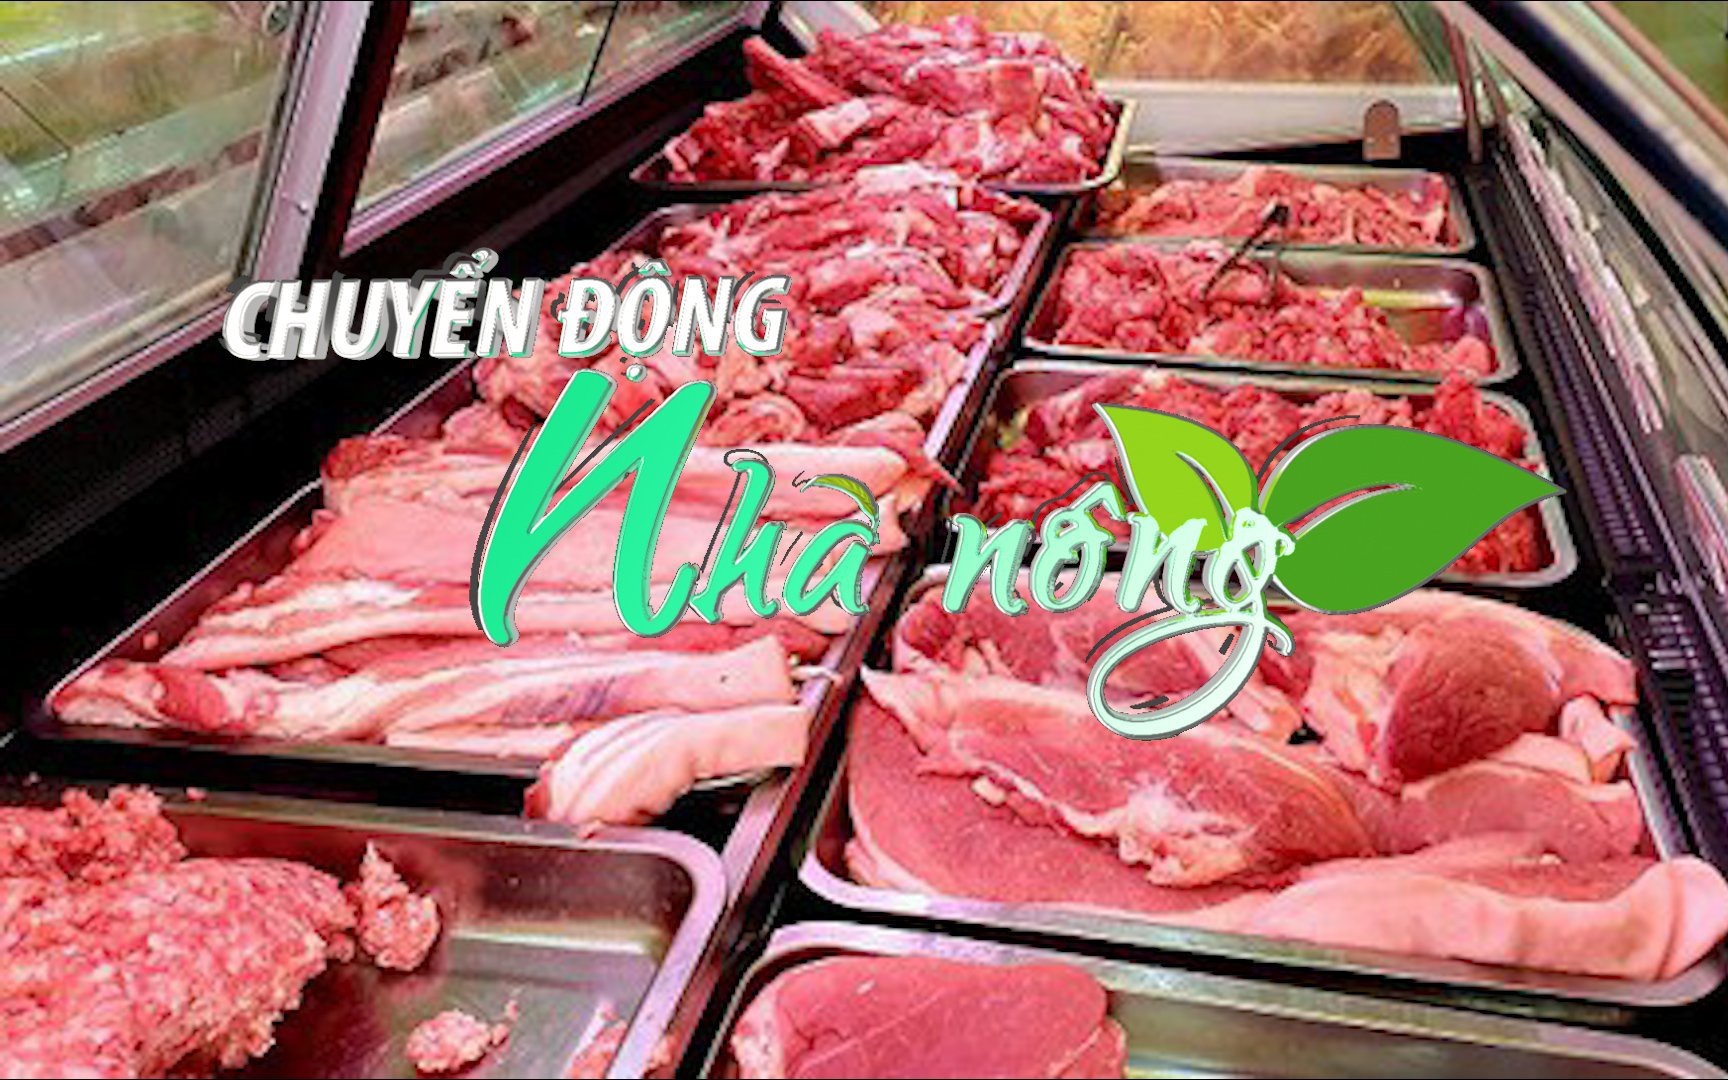 Chuyển động Nhà nông 24/7: Thịt lợn đắt đỏ, hàng bán chậm vì sức mua yếu